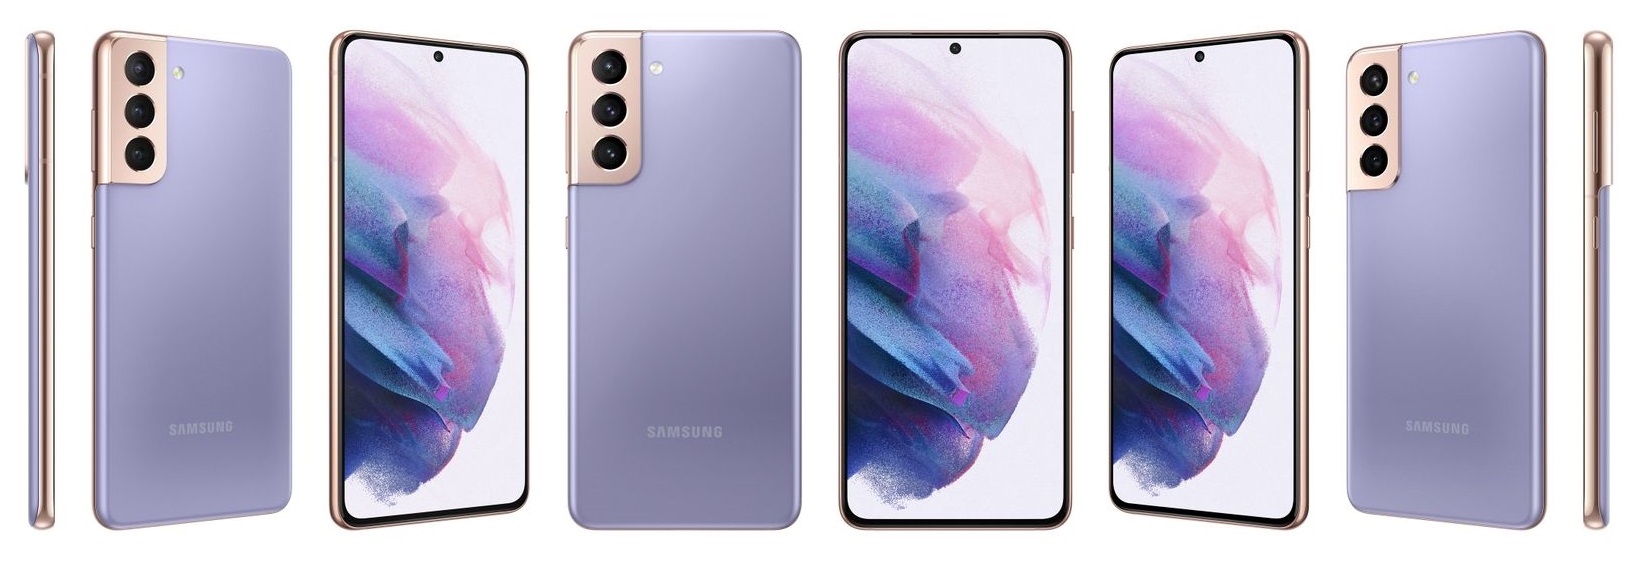 Samsung galaxy s21 5g 256gb. Samsung Galaxy s21 Plus. Samsung Galaxy s21 Plus 5g. Samsung Galaxy s21 Ultra. Samsung Galaxy s21+ 5g.